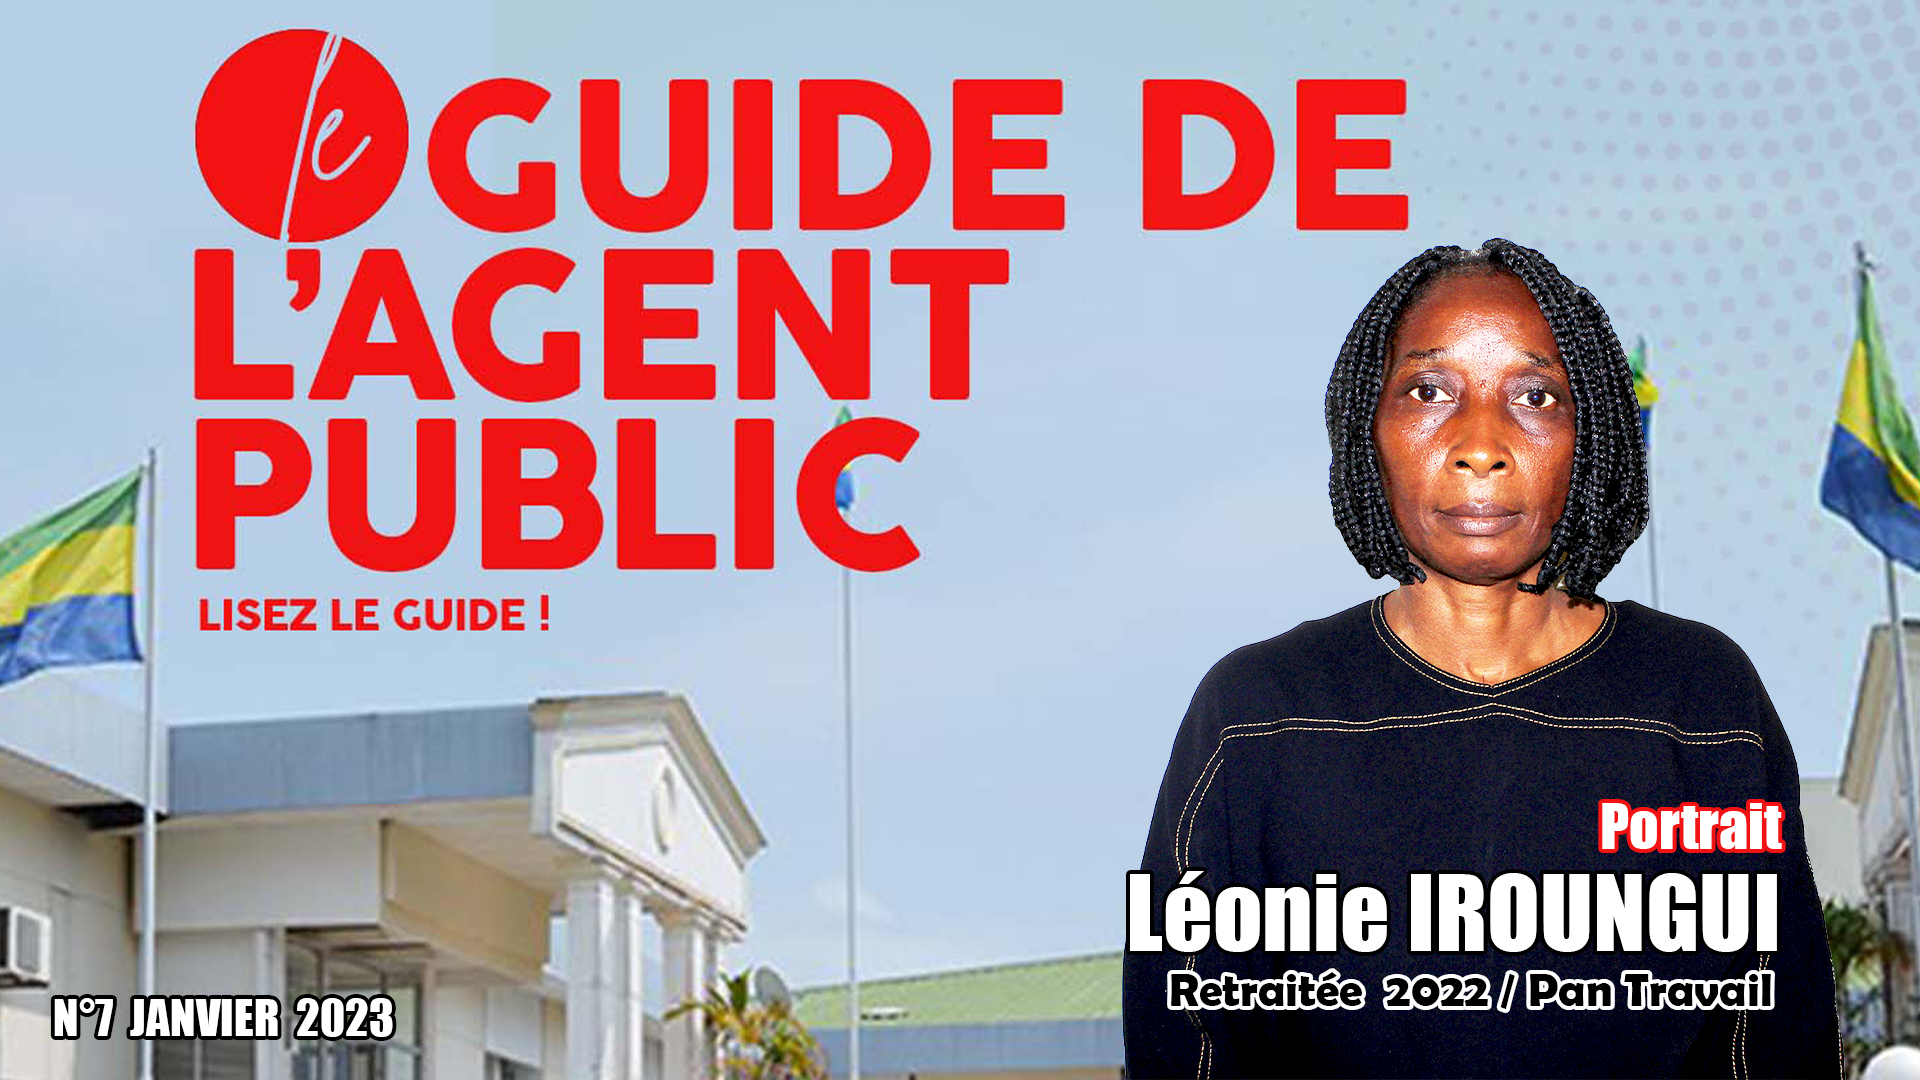 Le Guide de l'Agent Public; Credit: 